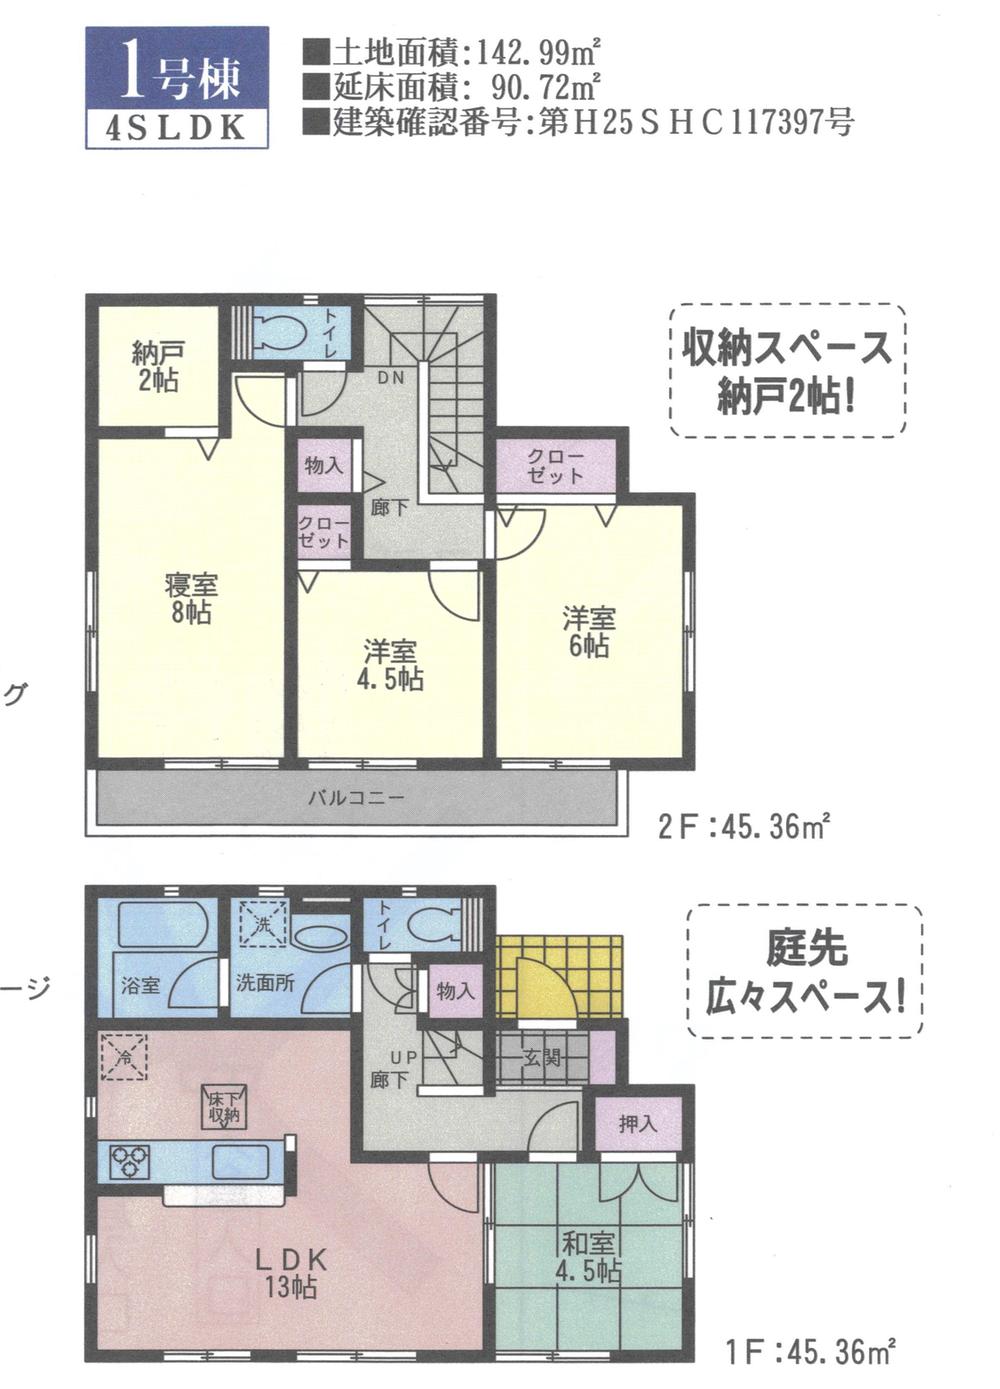 Floor plan. 26,800,000 yen, 4LDK + S (storeroom), Land area 142.99 sq m , Building area 90.72 sq m